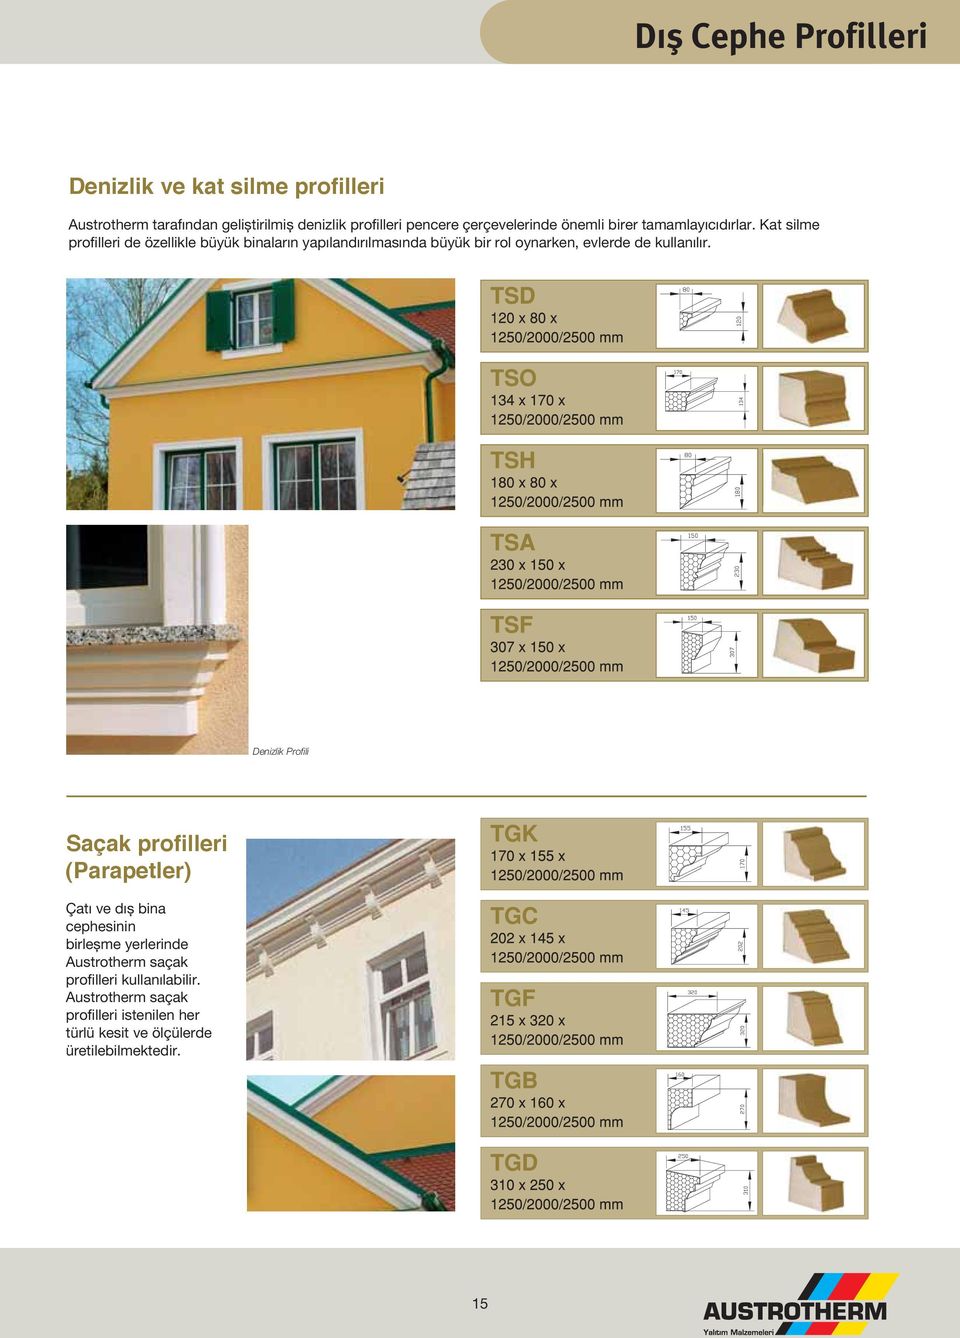 Kat silme profilleri de özellikle büyük binaların yapılandırılmasında büyük bir rol oynarken, evlerde de kullanılır.